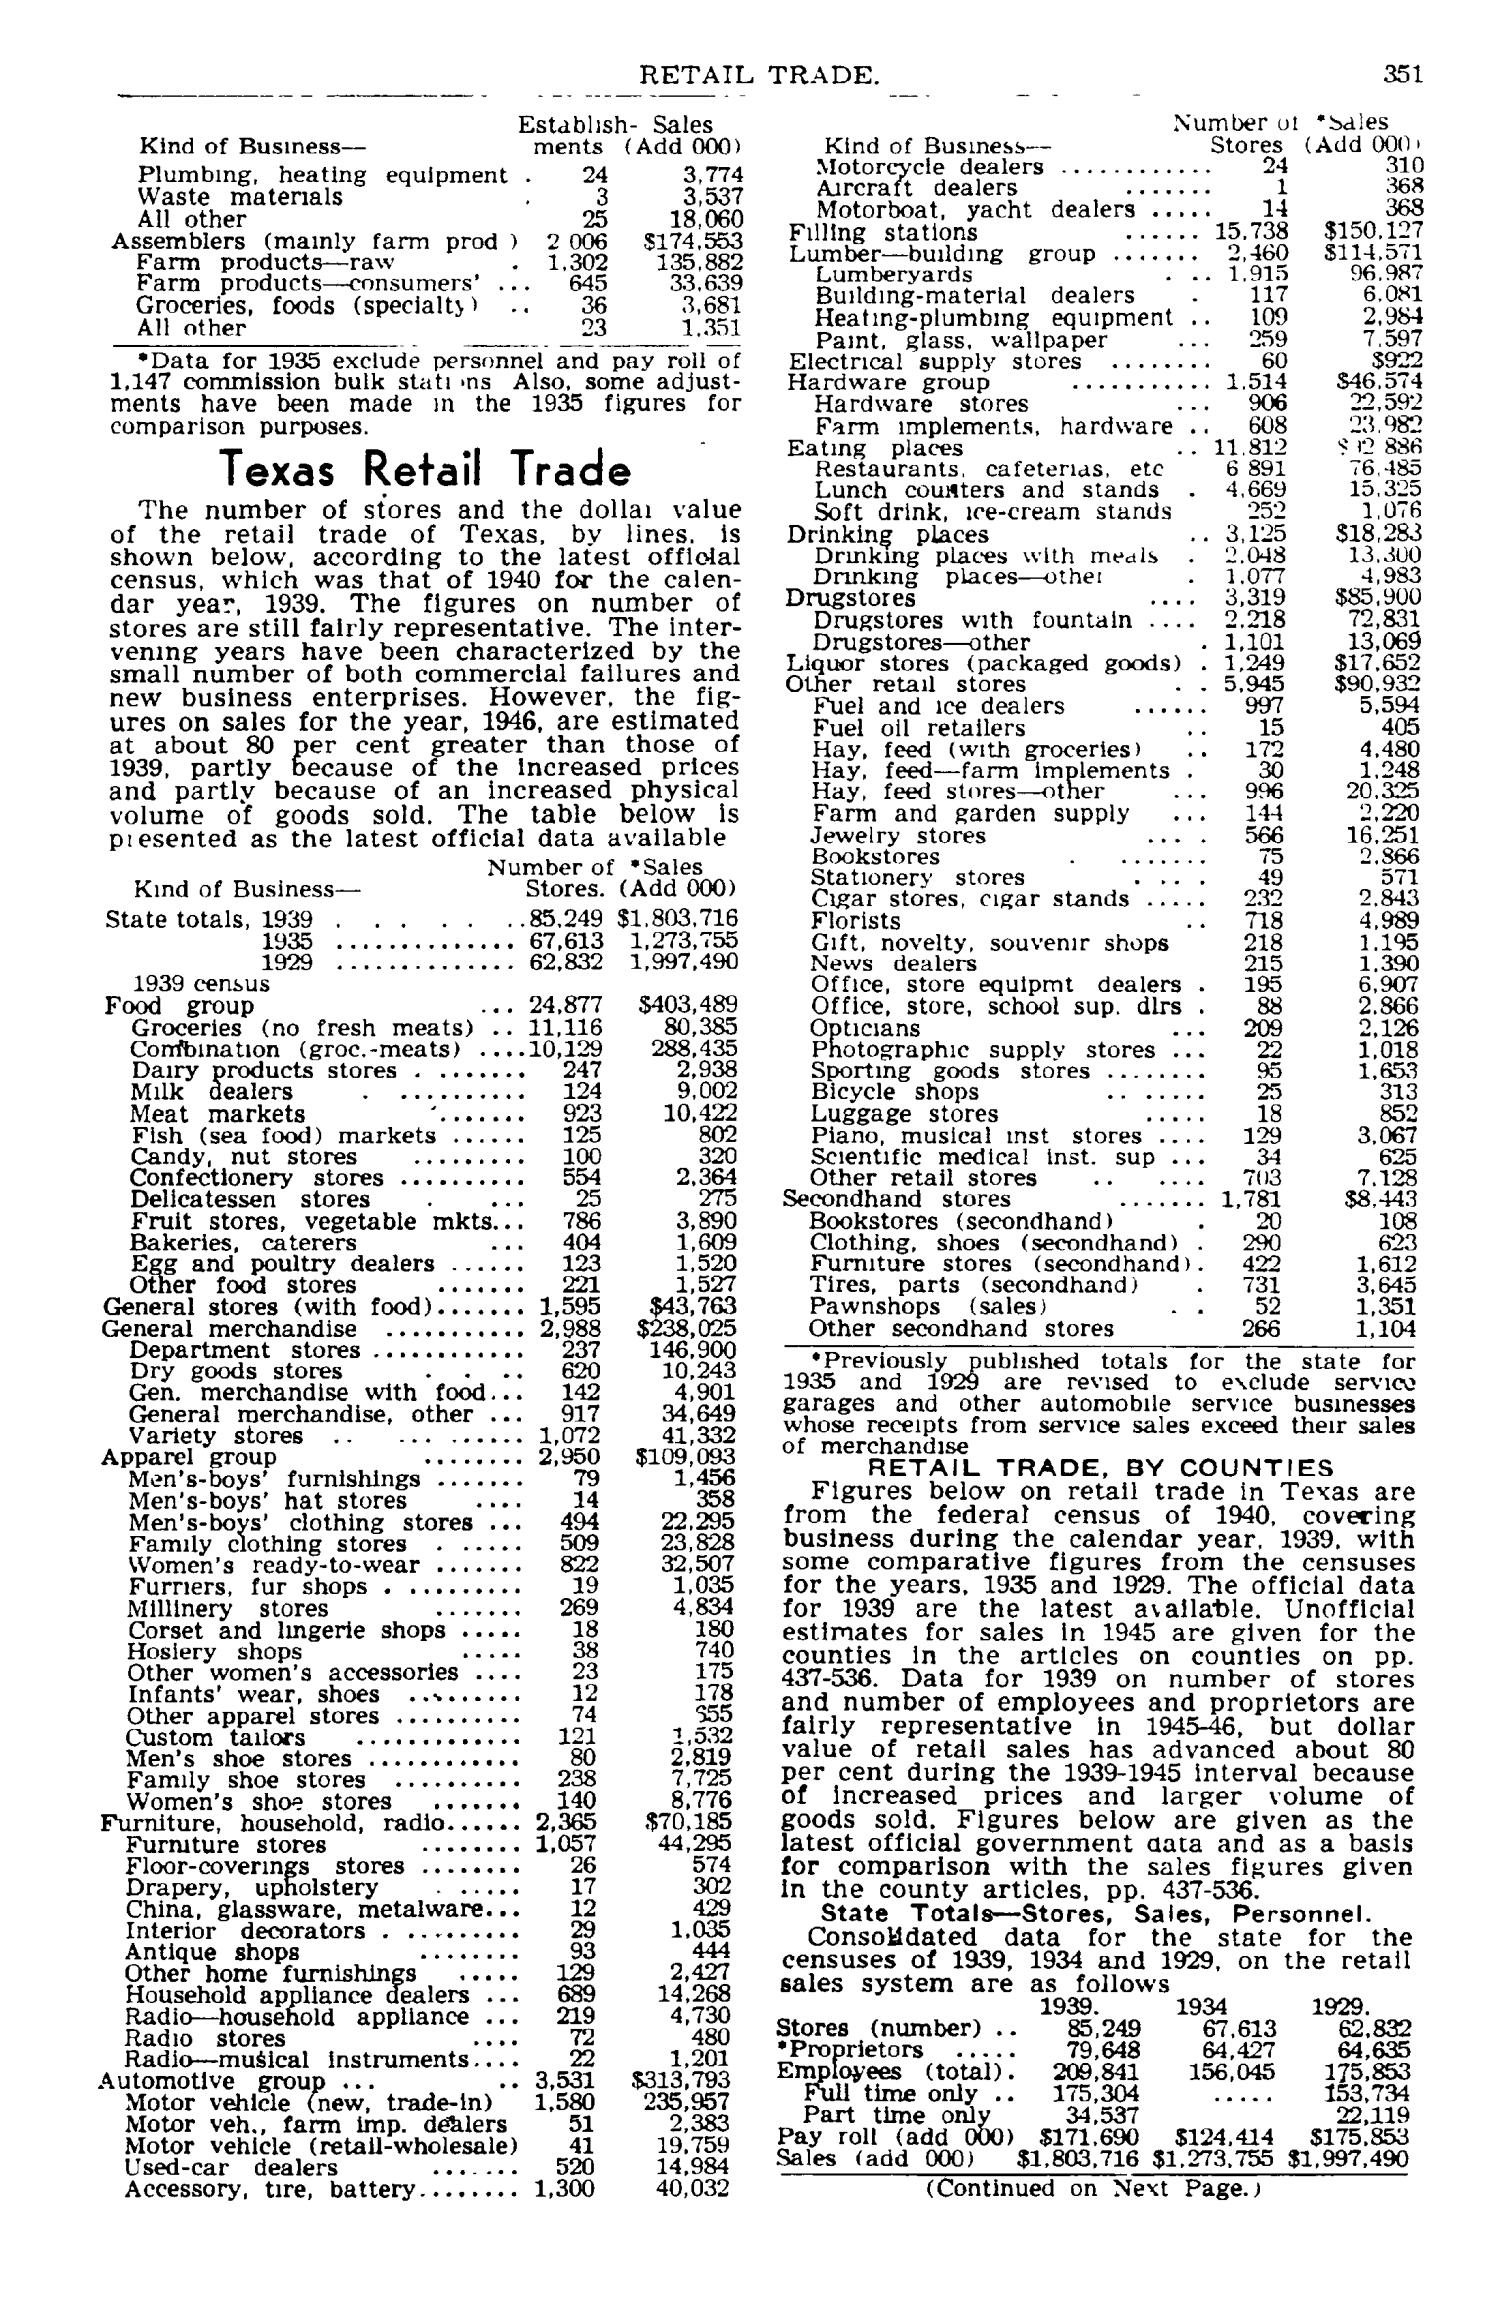 Texas Almanac, 1947-1948
                                                
                                                    351
                                                